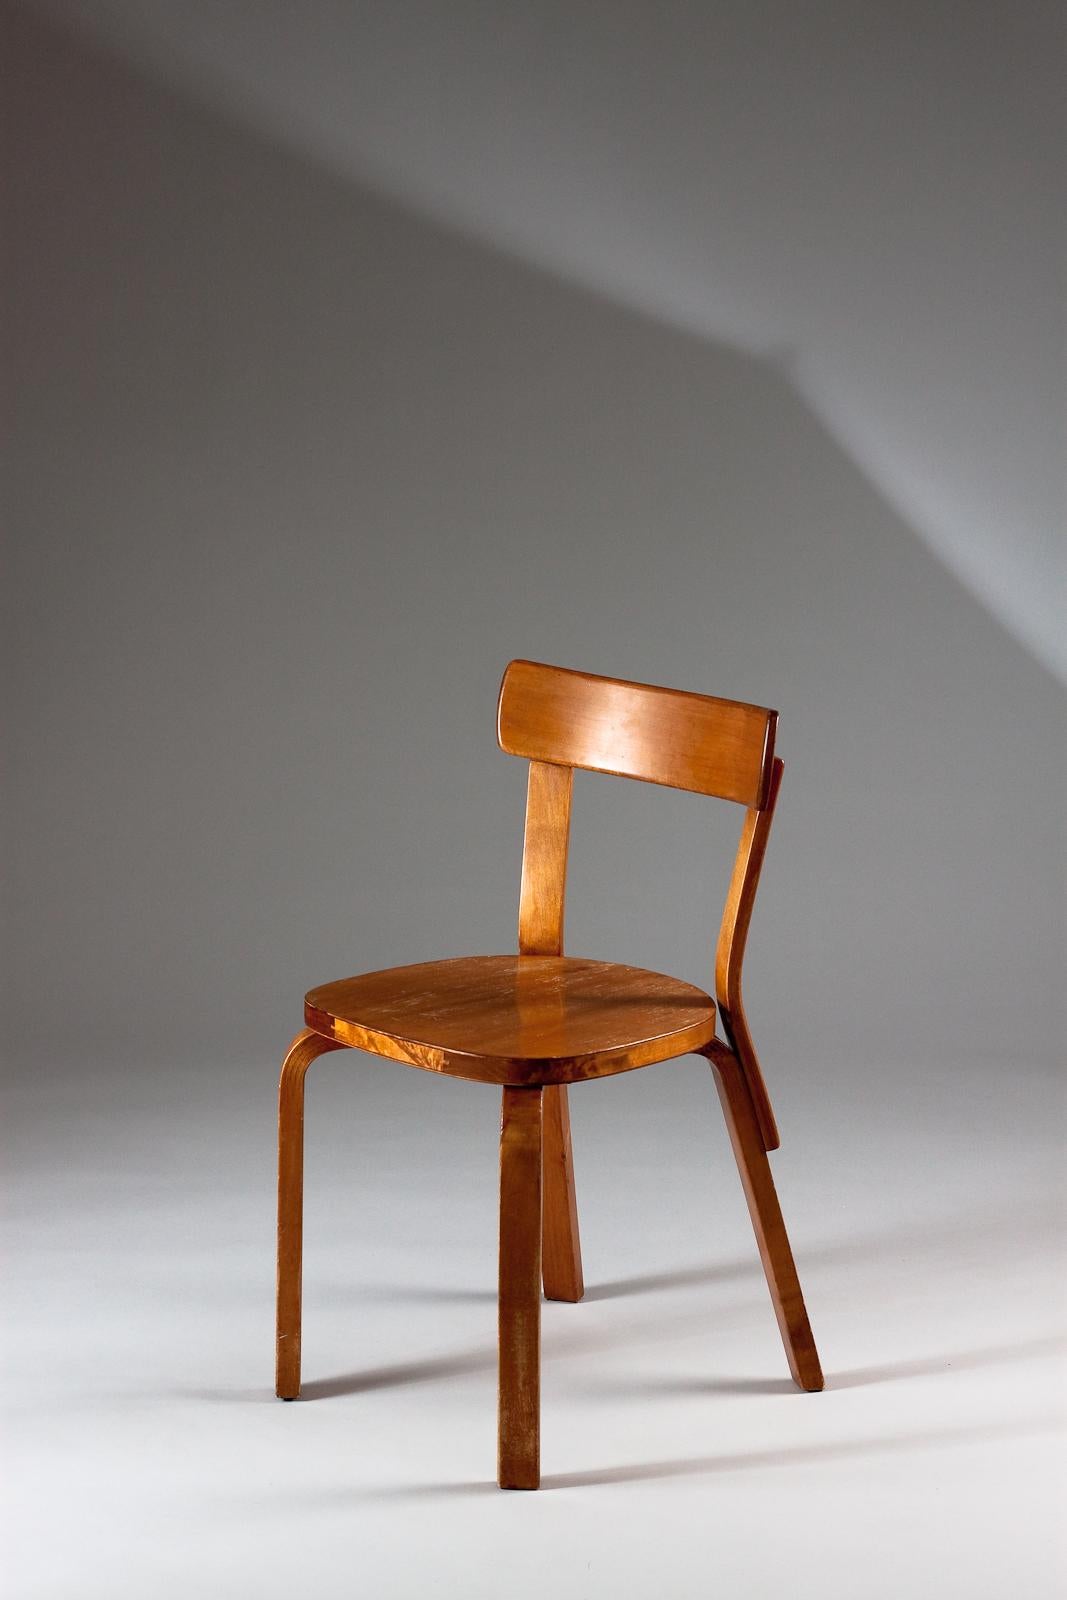 Original Alvar Aalto classic 69 Stuhl aus den 1930er Jahren mit toller honigfarbener Patina. Diese dunklen Originalstühle sind selten zu finden. Es handelt sich also um ein Sammlerstück.